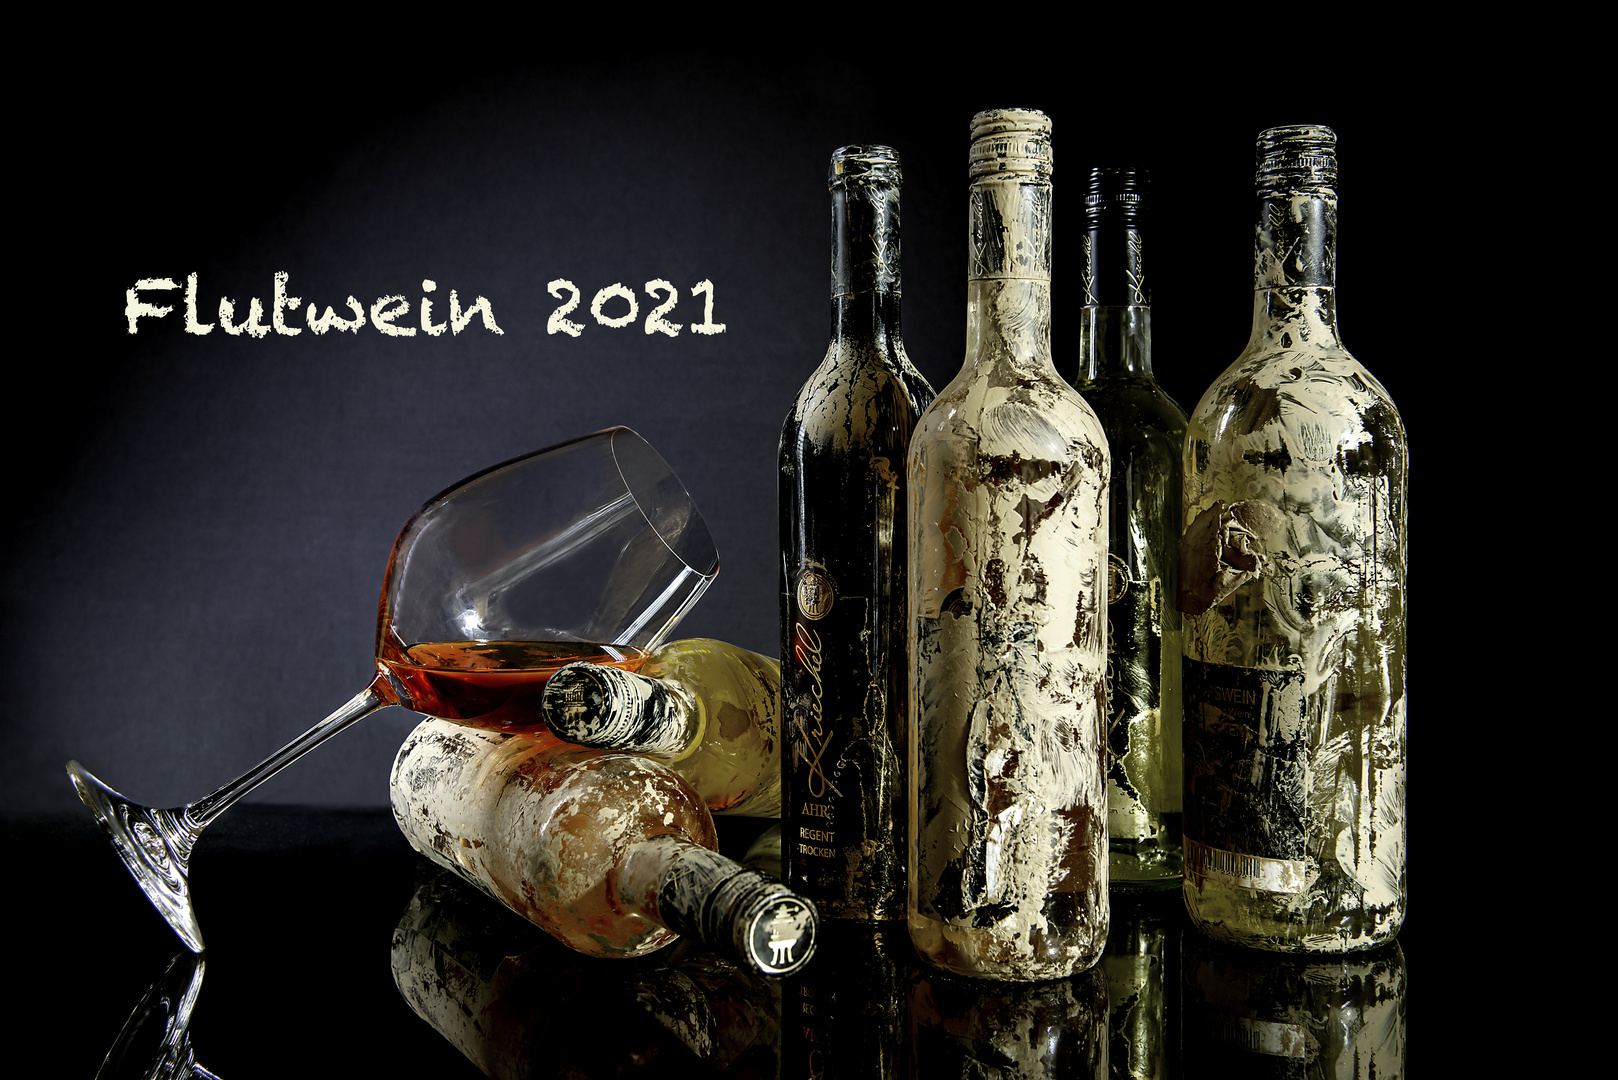 Flutwein 2021